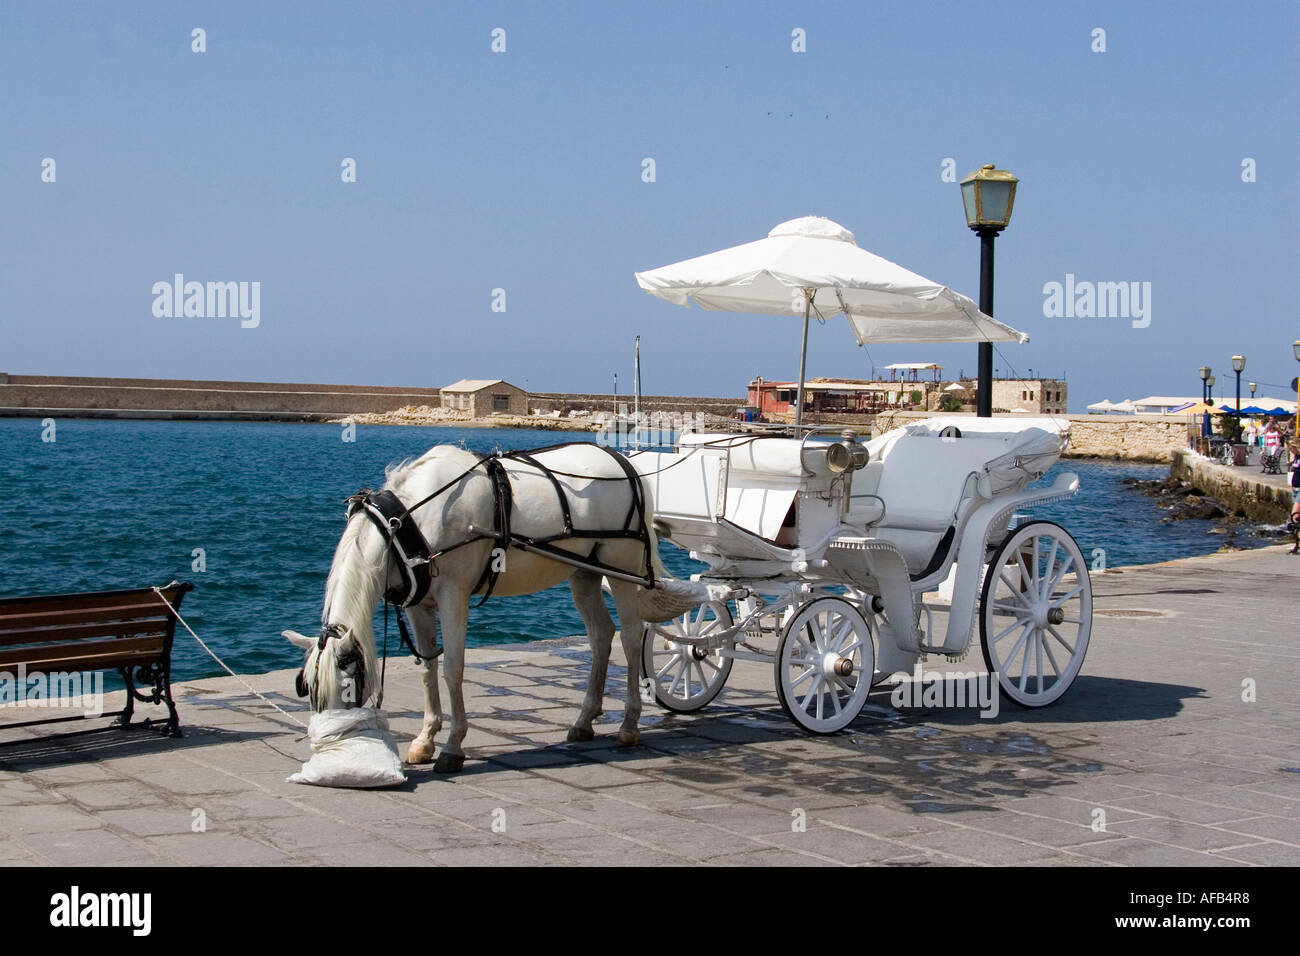 Comer del caballo nosebag mientras espera para turistas en la isla griega de Creta. Foto de stock